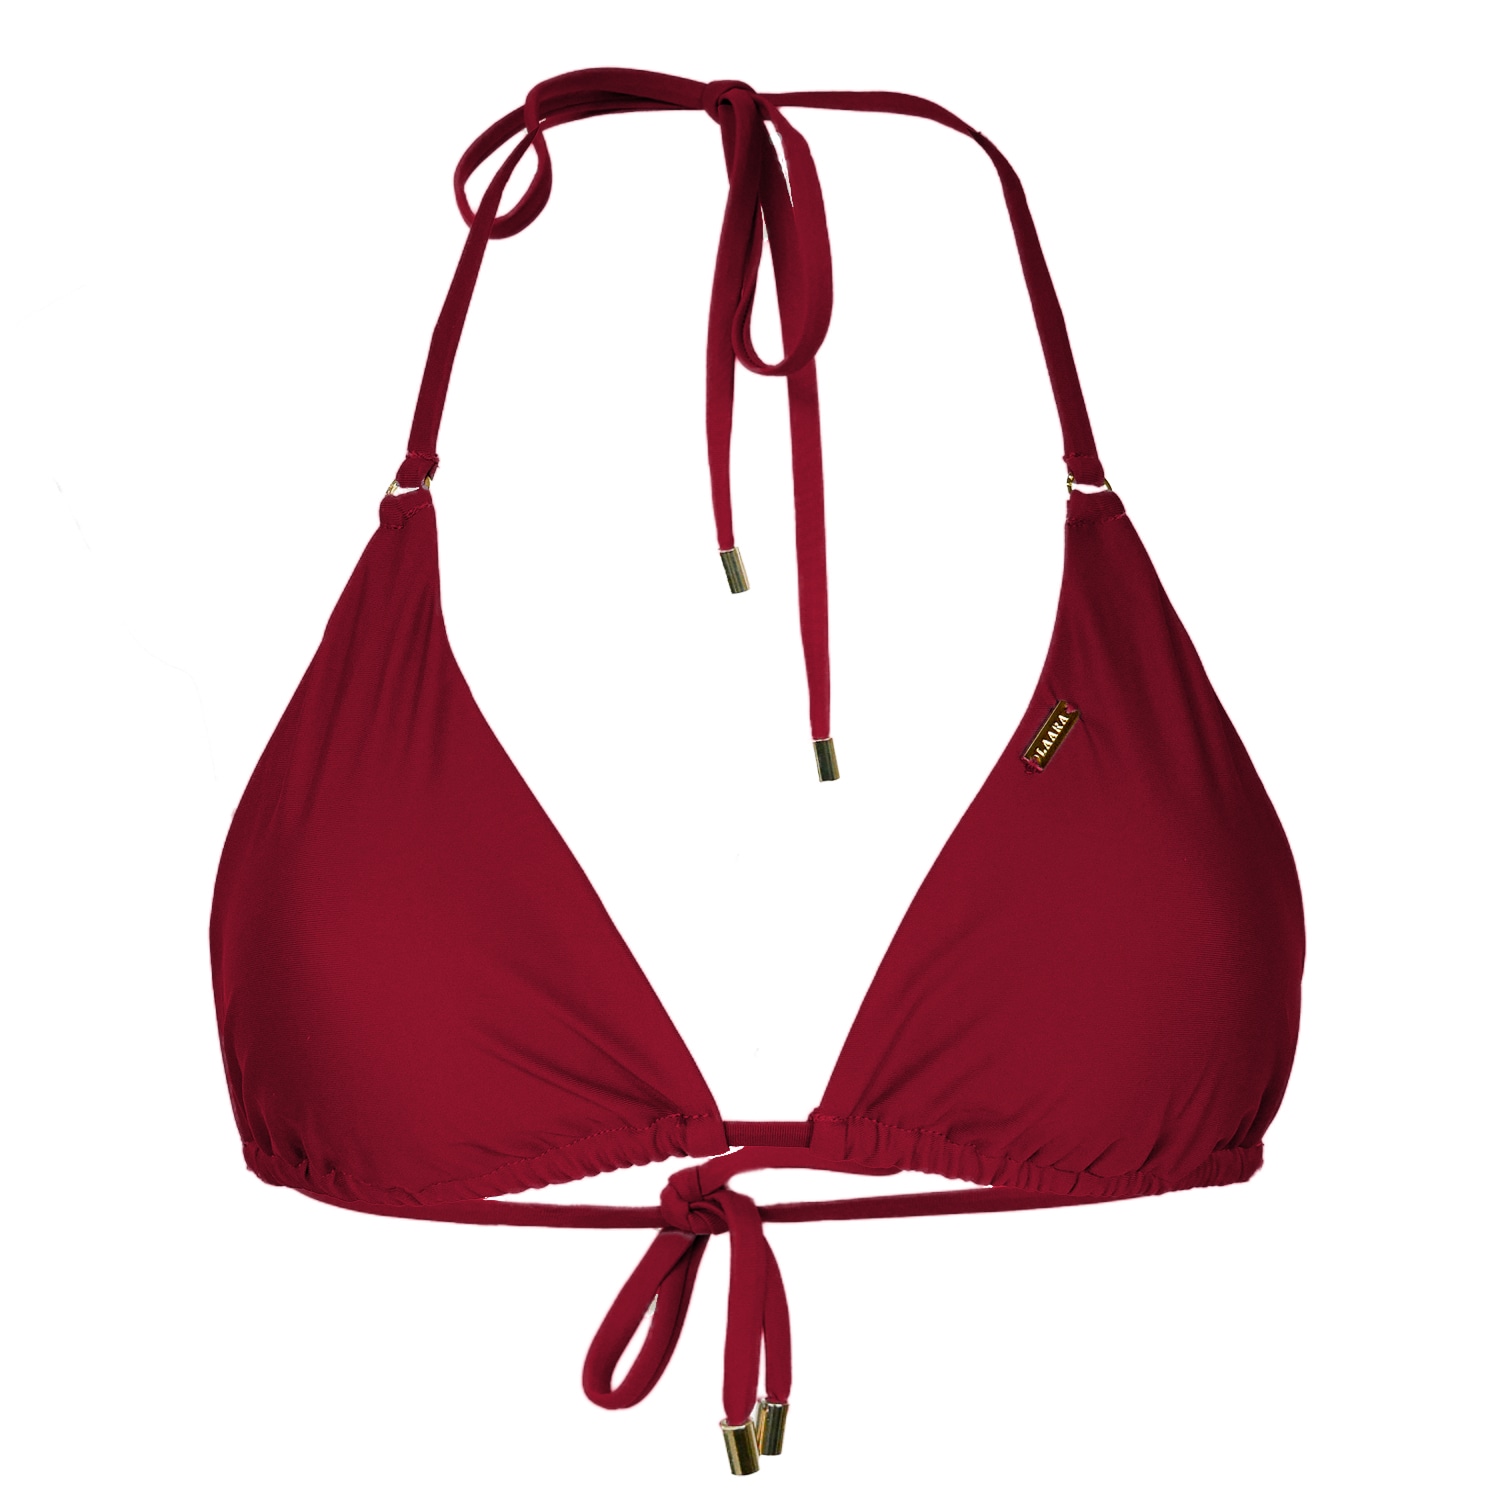 Women’s Rio Triangle Bikini Top - Red Small Laara Swim